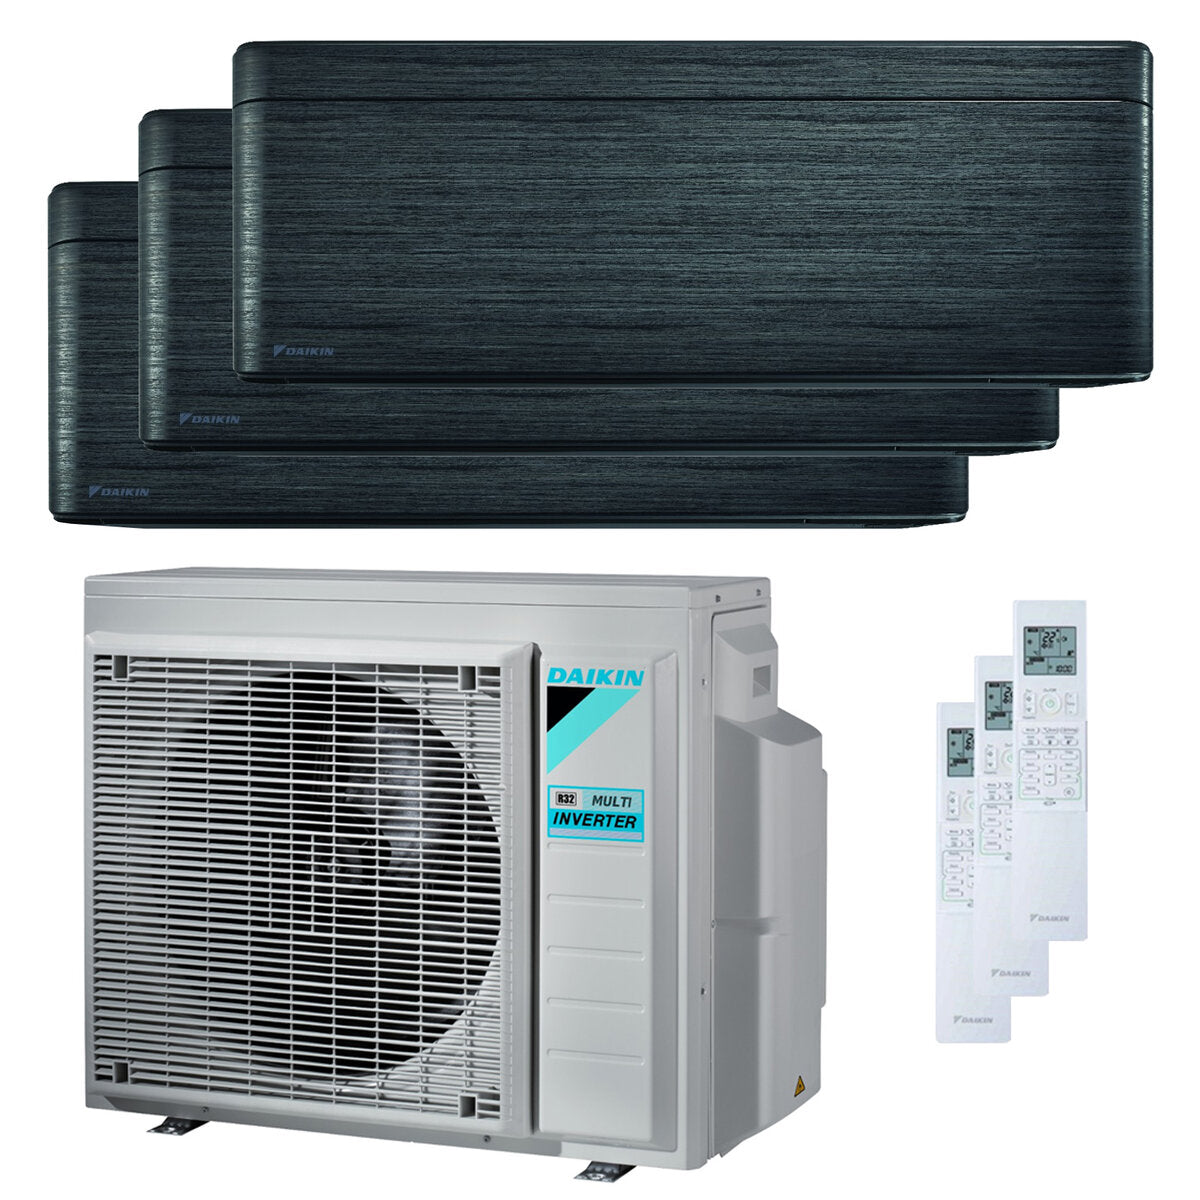 Daikin Stylish trial split air conditioner 7000 + 7000 + 9000 BTU inverter A +++ wifi outdoor unit 5.2 kW